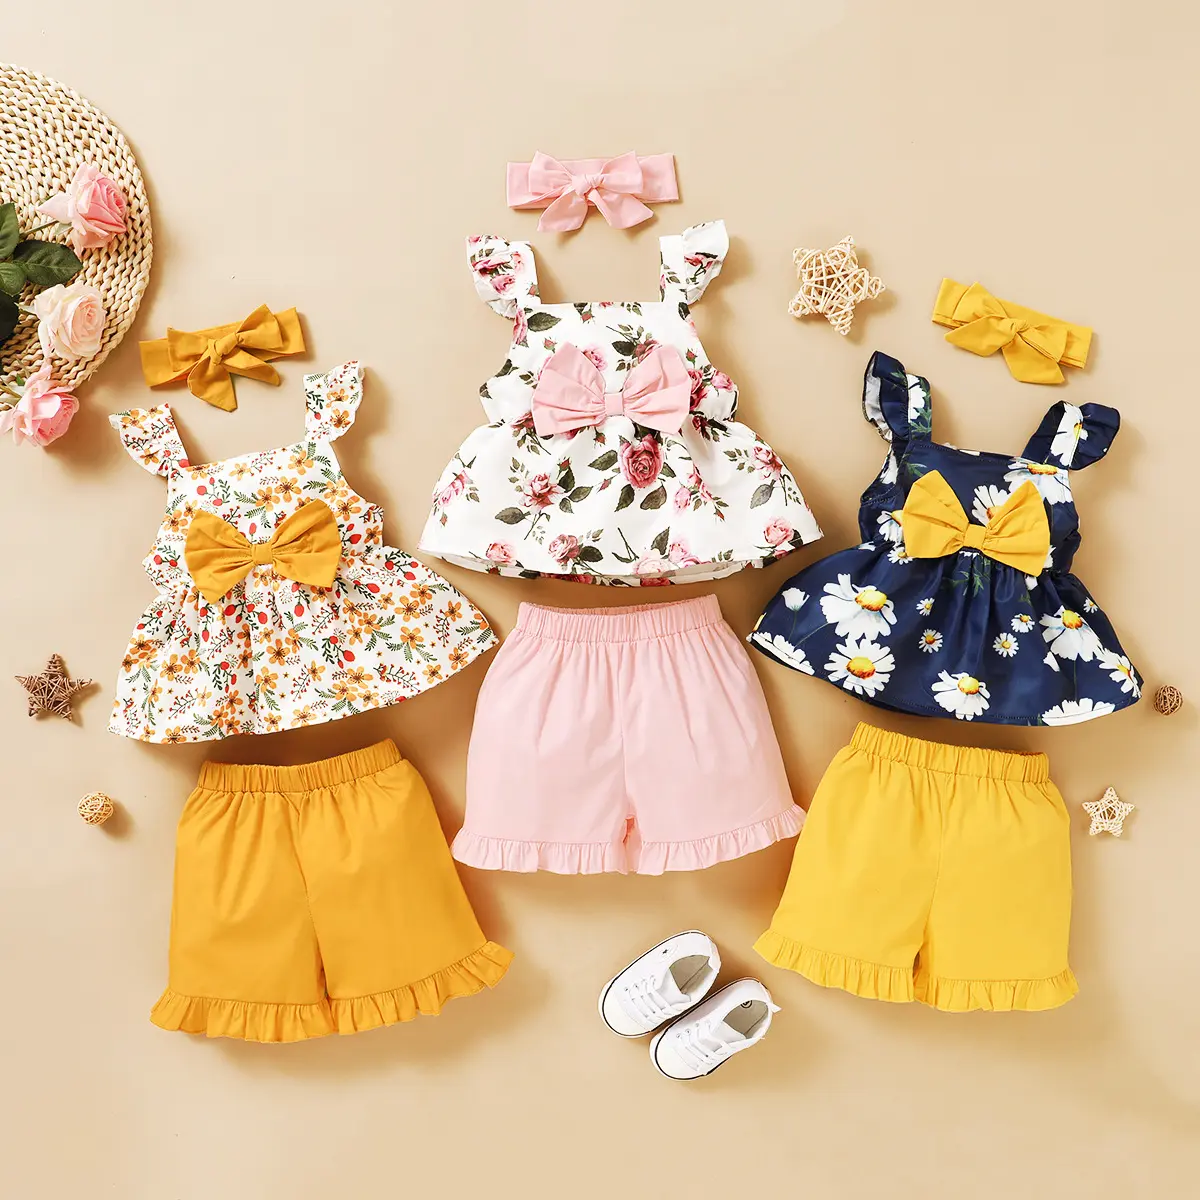 공장 가격 아기 소녀 의류 세트 귀여운 Bowknot 아기 의류 세 조각 세트 여름 아기 소녀 옷